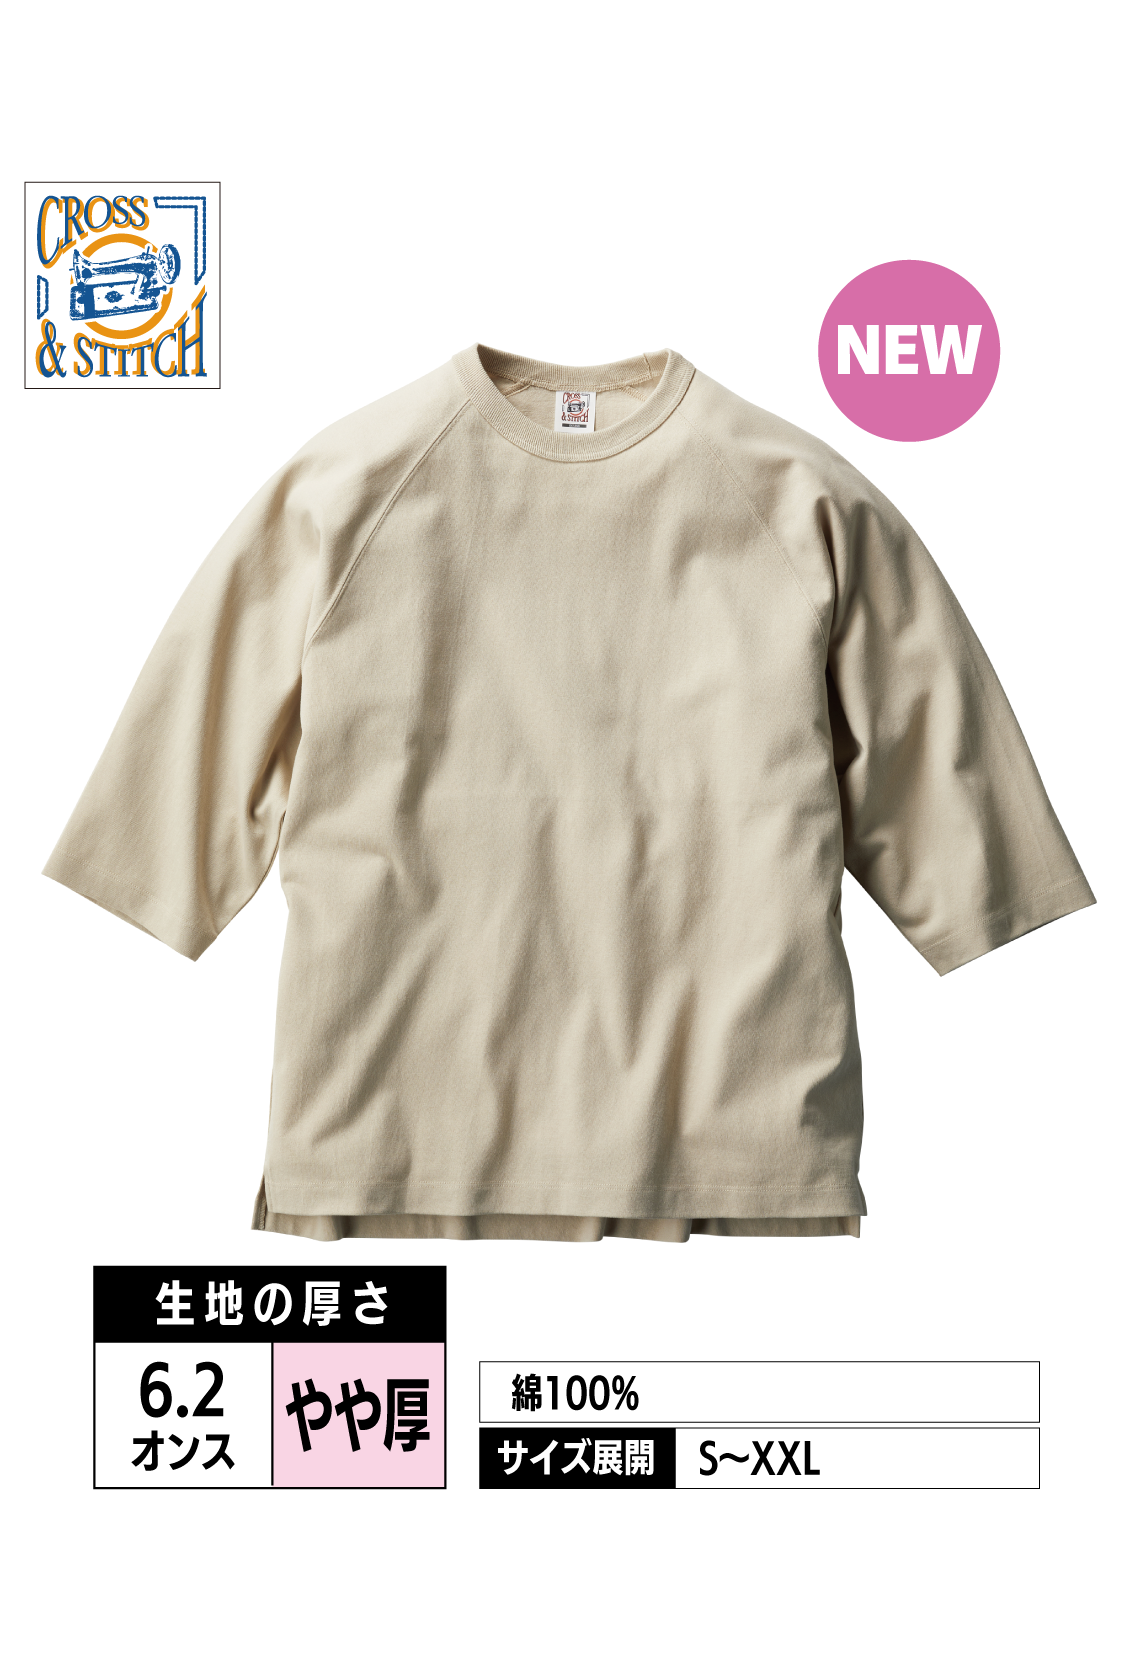 OE1250｜オープンエンド リラックスフィット ラグランTシャツ【全4色】CROSS&STITCH